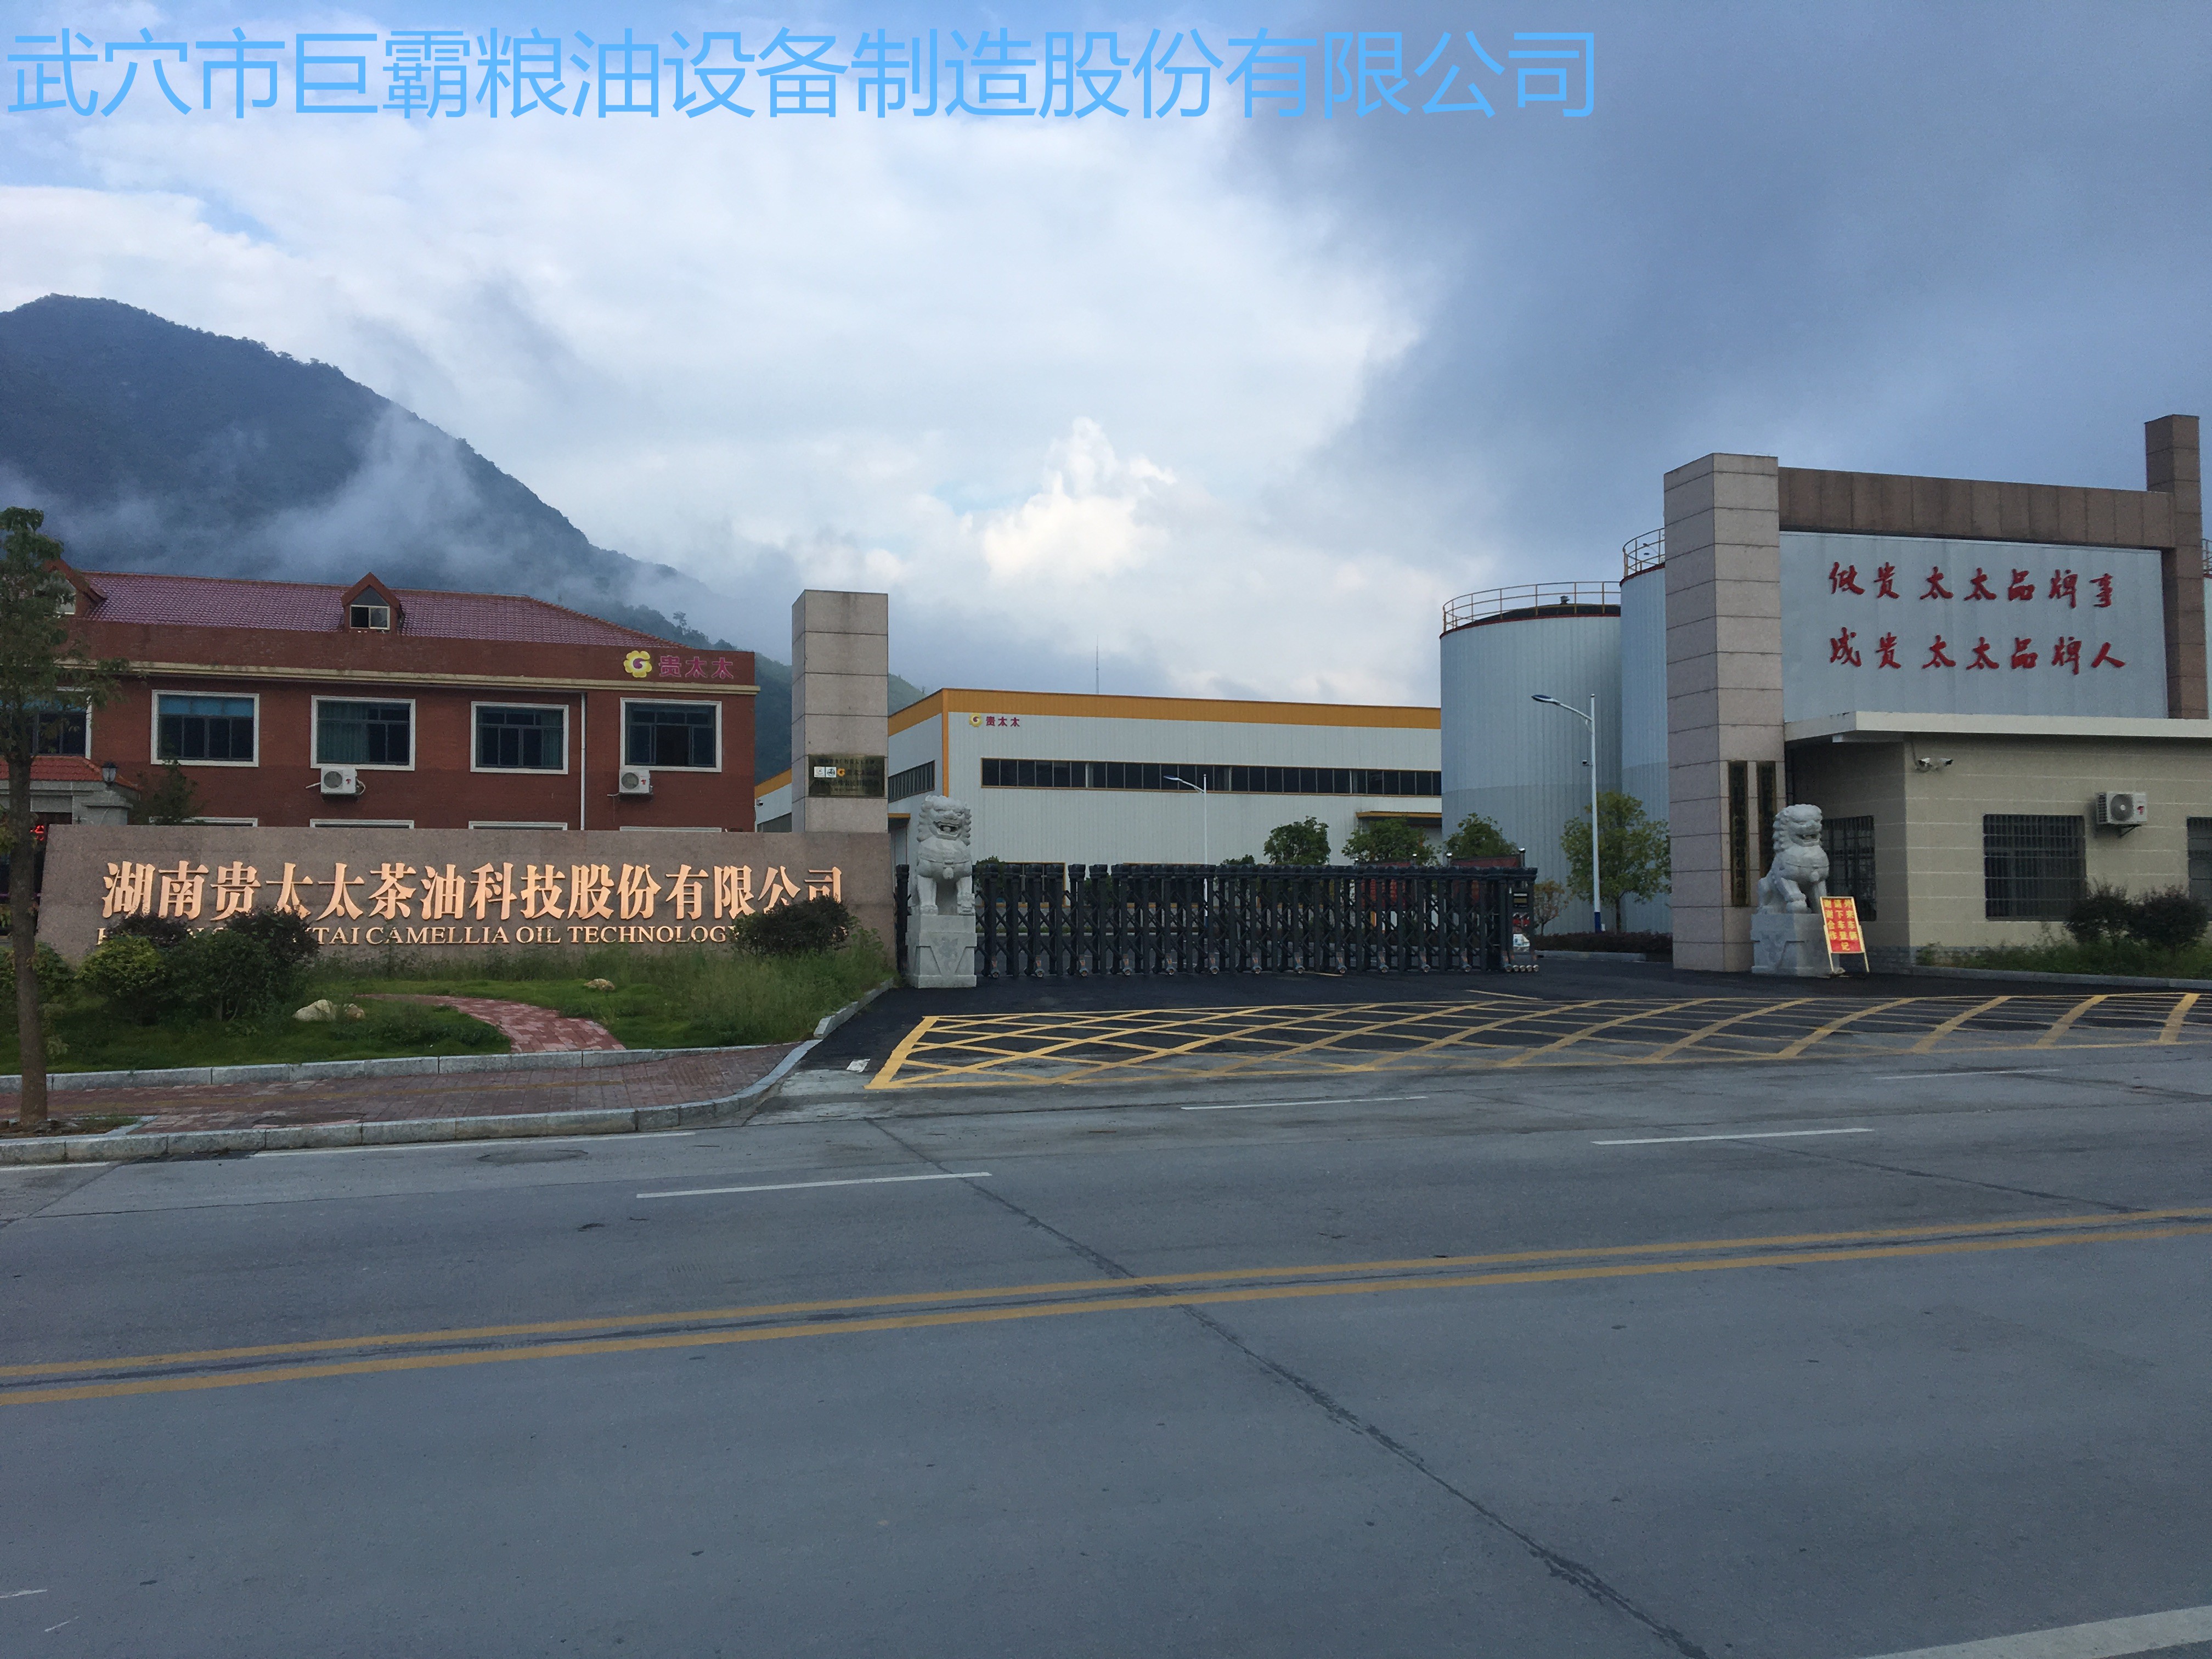 湖南貴太太茶油科技股份有限公司150T/D茶餅、菜籽紅餅、野生鐵核桃成套工程